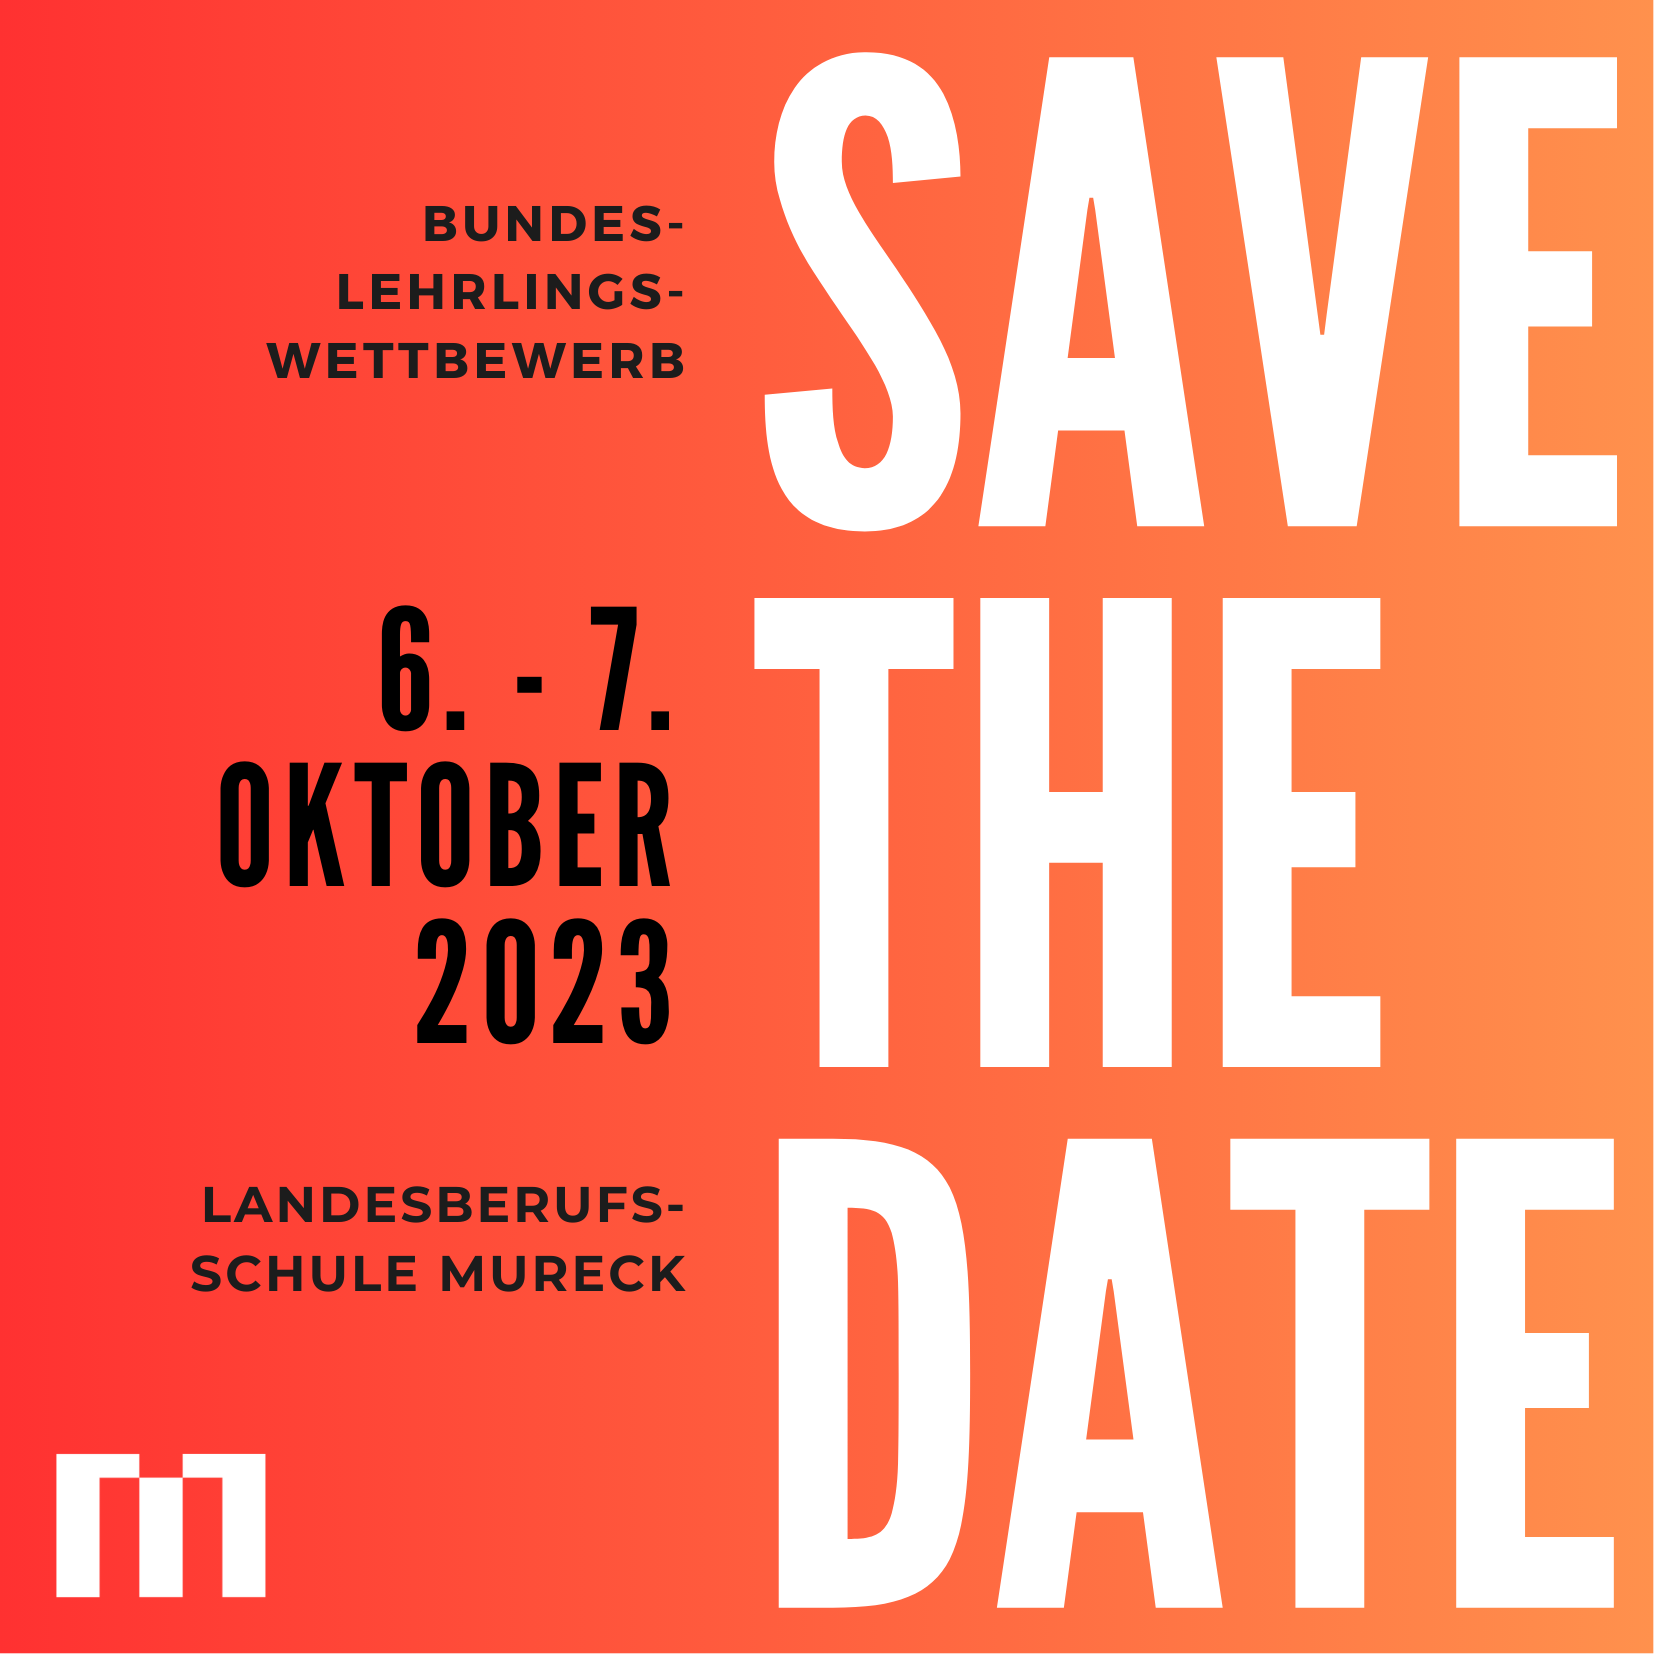 Save the date. Bundeslehrlingswettbewerb Metalltechnik